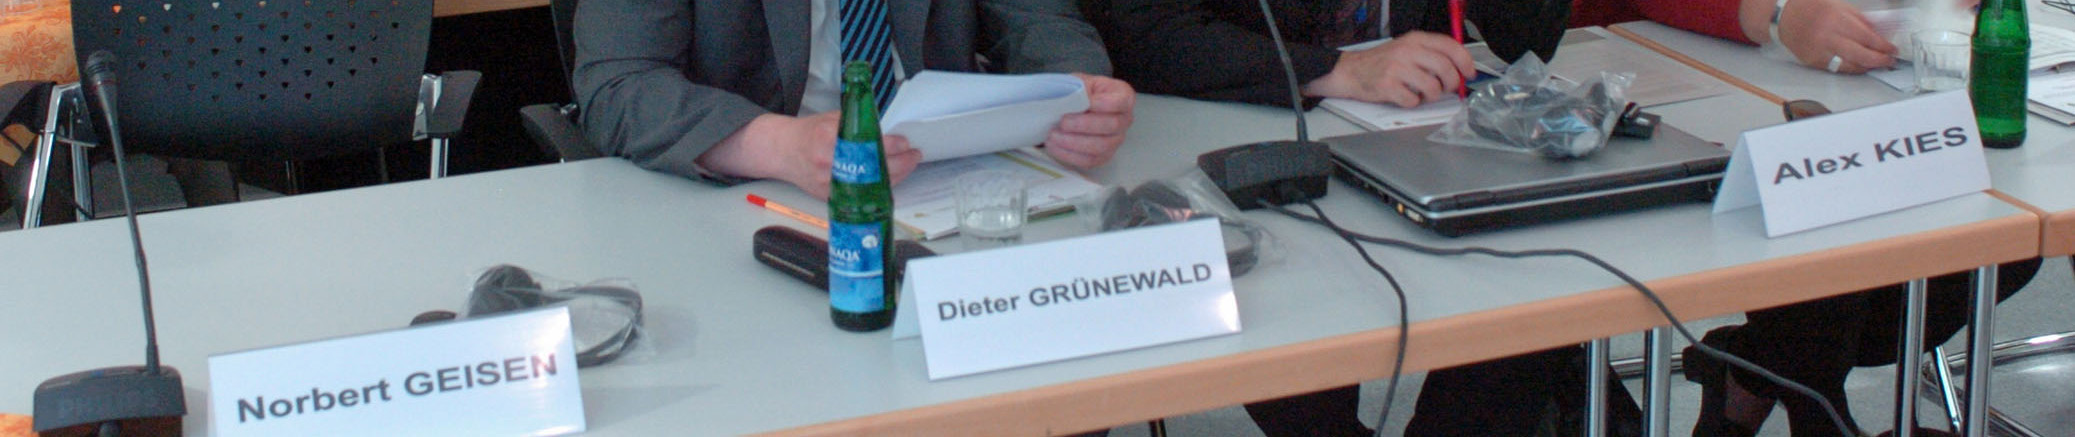 Treffen zu initiieren. Mittelfristig ist vorgesehen, dass diese Arbeitsgruppen sich dann selbst organisieren. Foto : Reiner Oettinger IV.